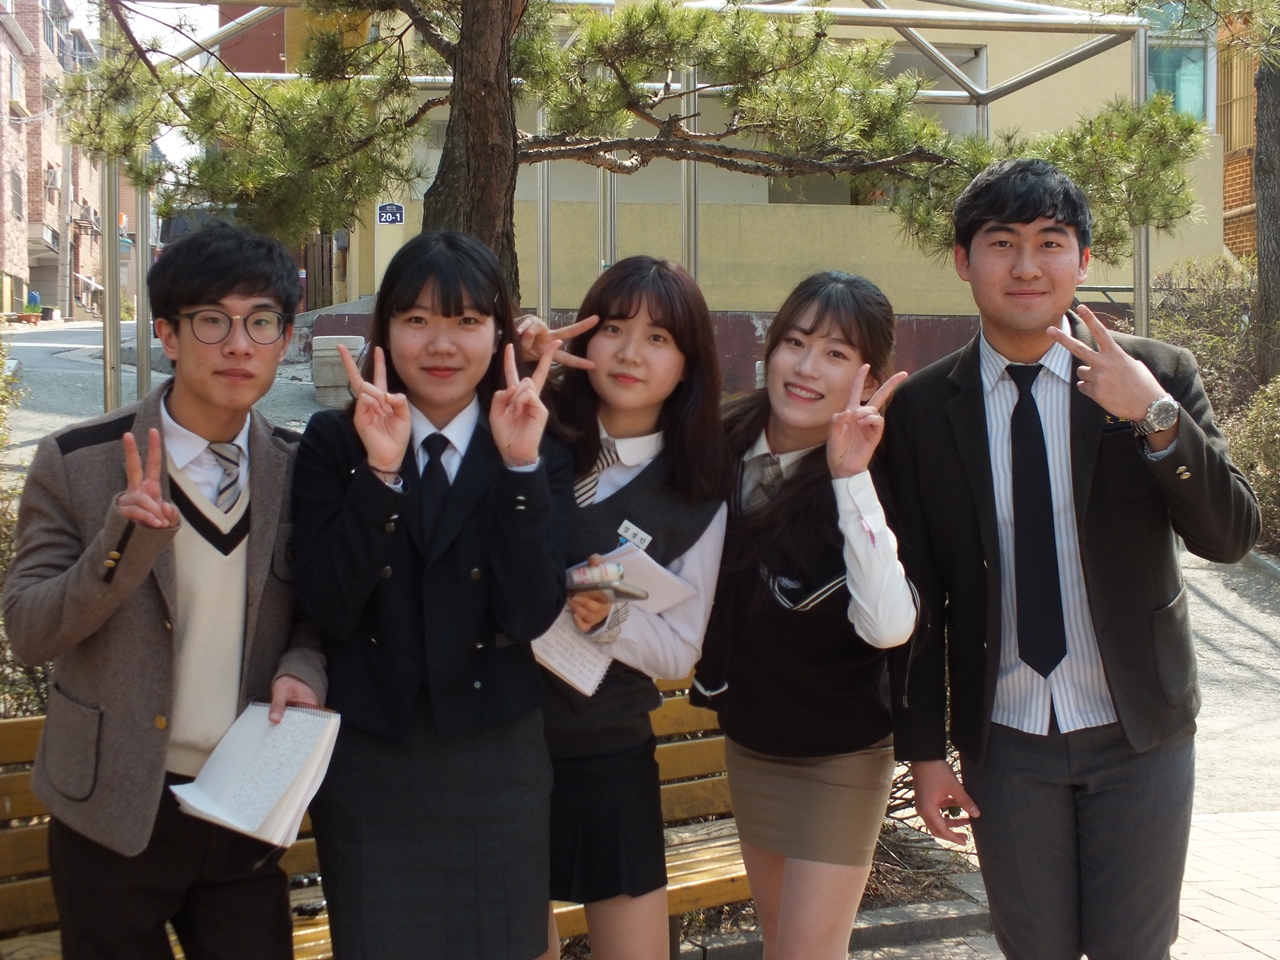 올해 2월 고등학교를 졸업하고 처음 교복을 입었다는 박종태, 정재원, 강정민, 박지원, 문현규(왼족부터). 